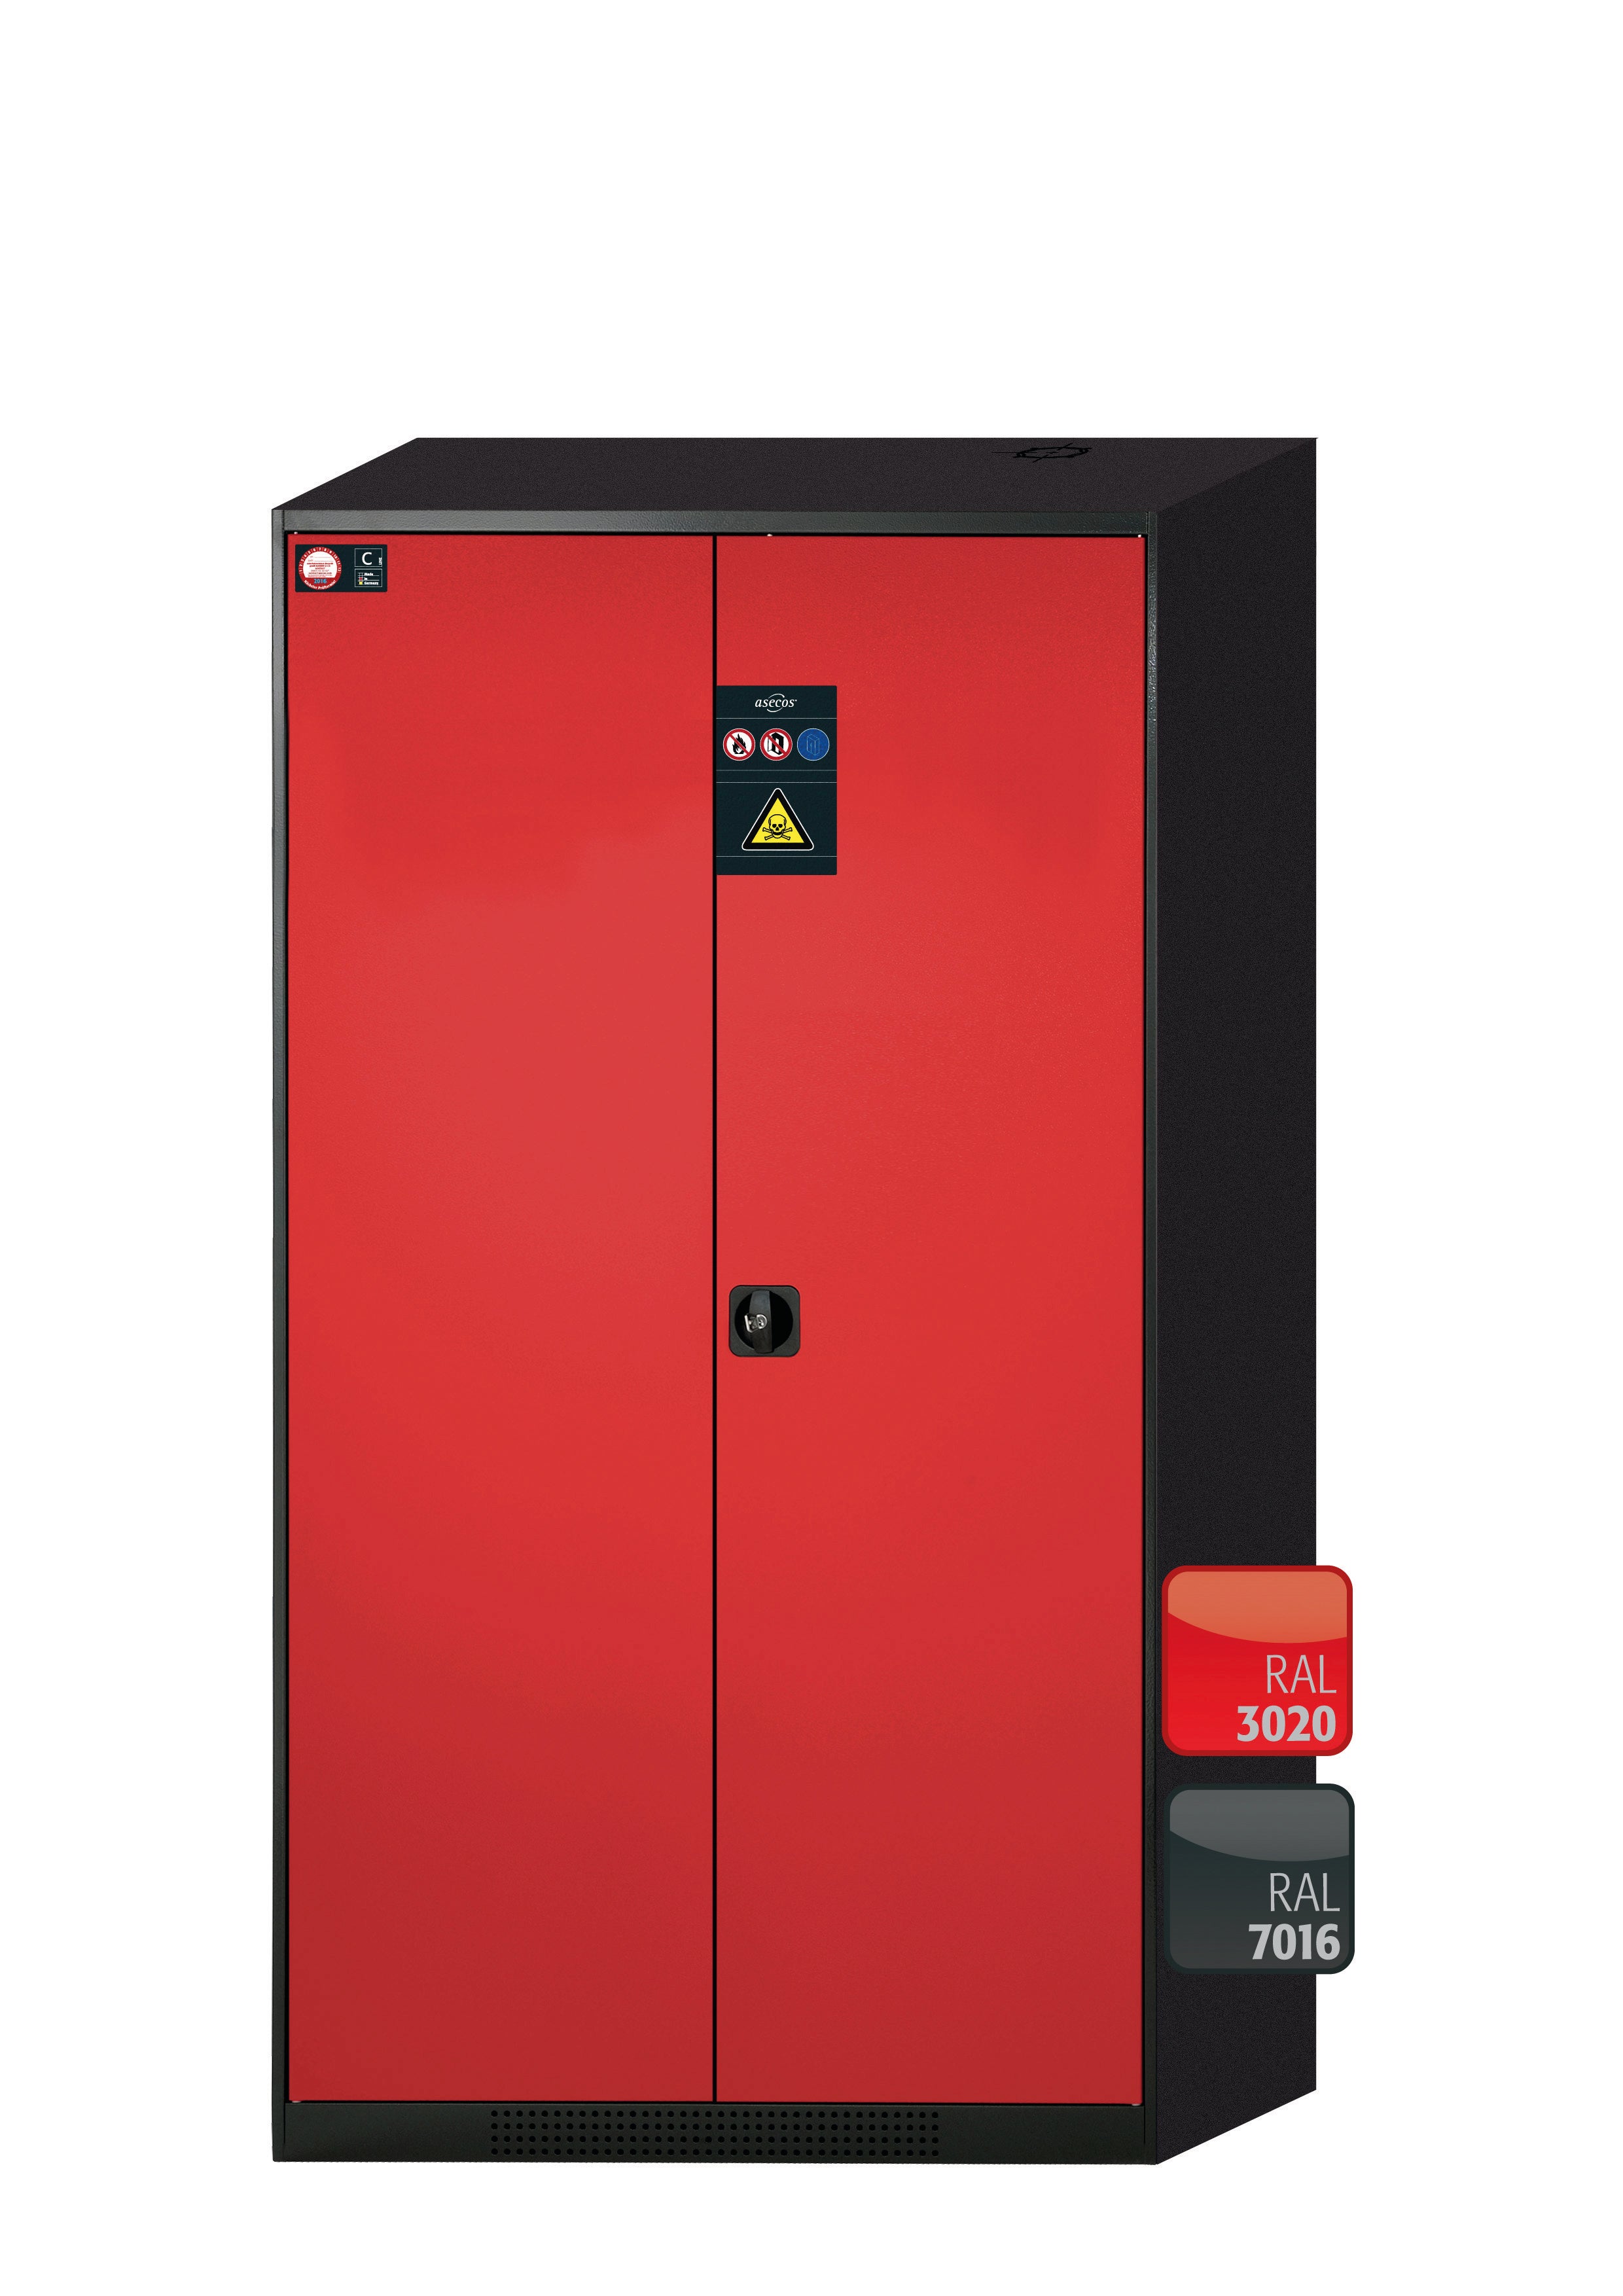 Armoire chimique CS-CLASSIC modèle CS.195.105 en rouge signalisation RAL 3020 avec 3x étagères standard (tôle d'acier)